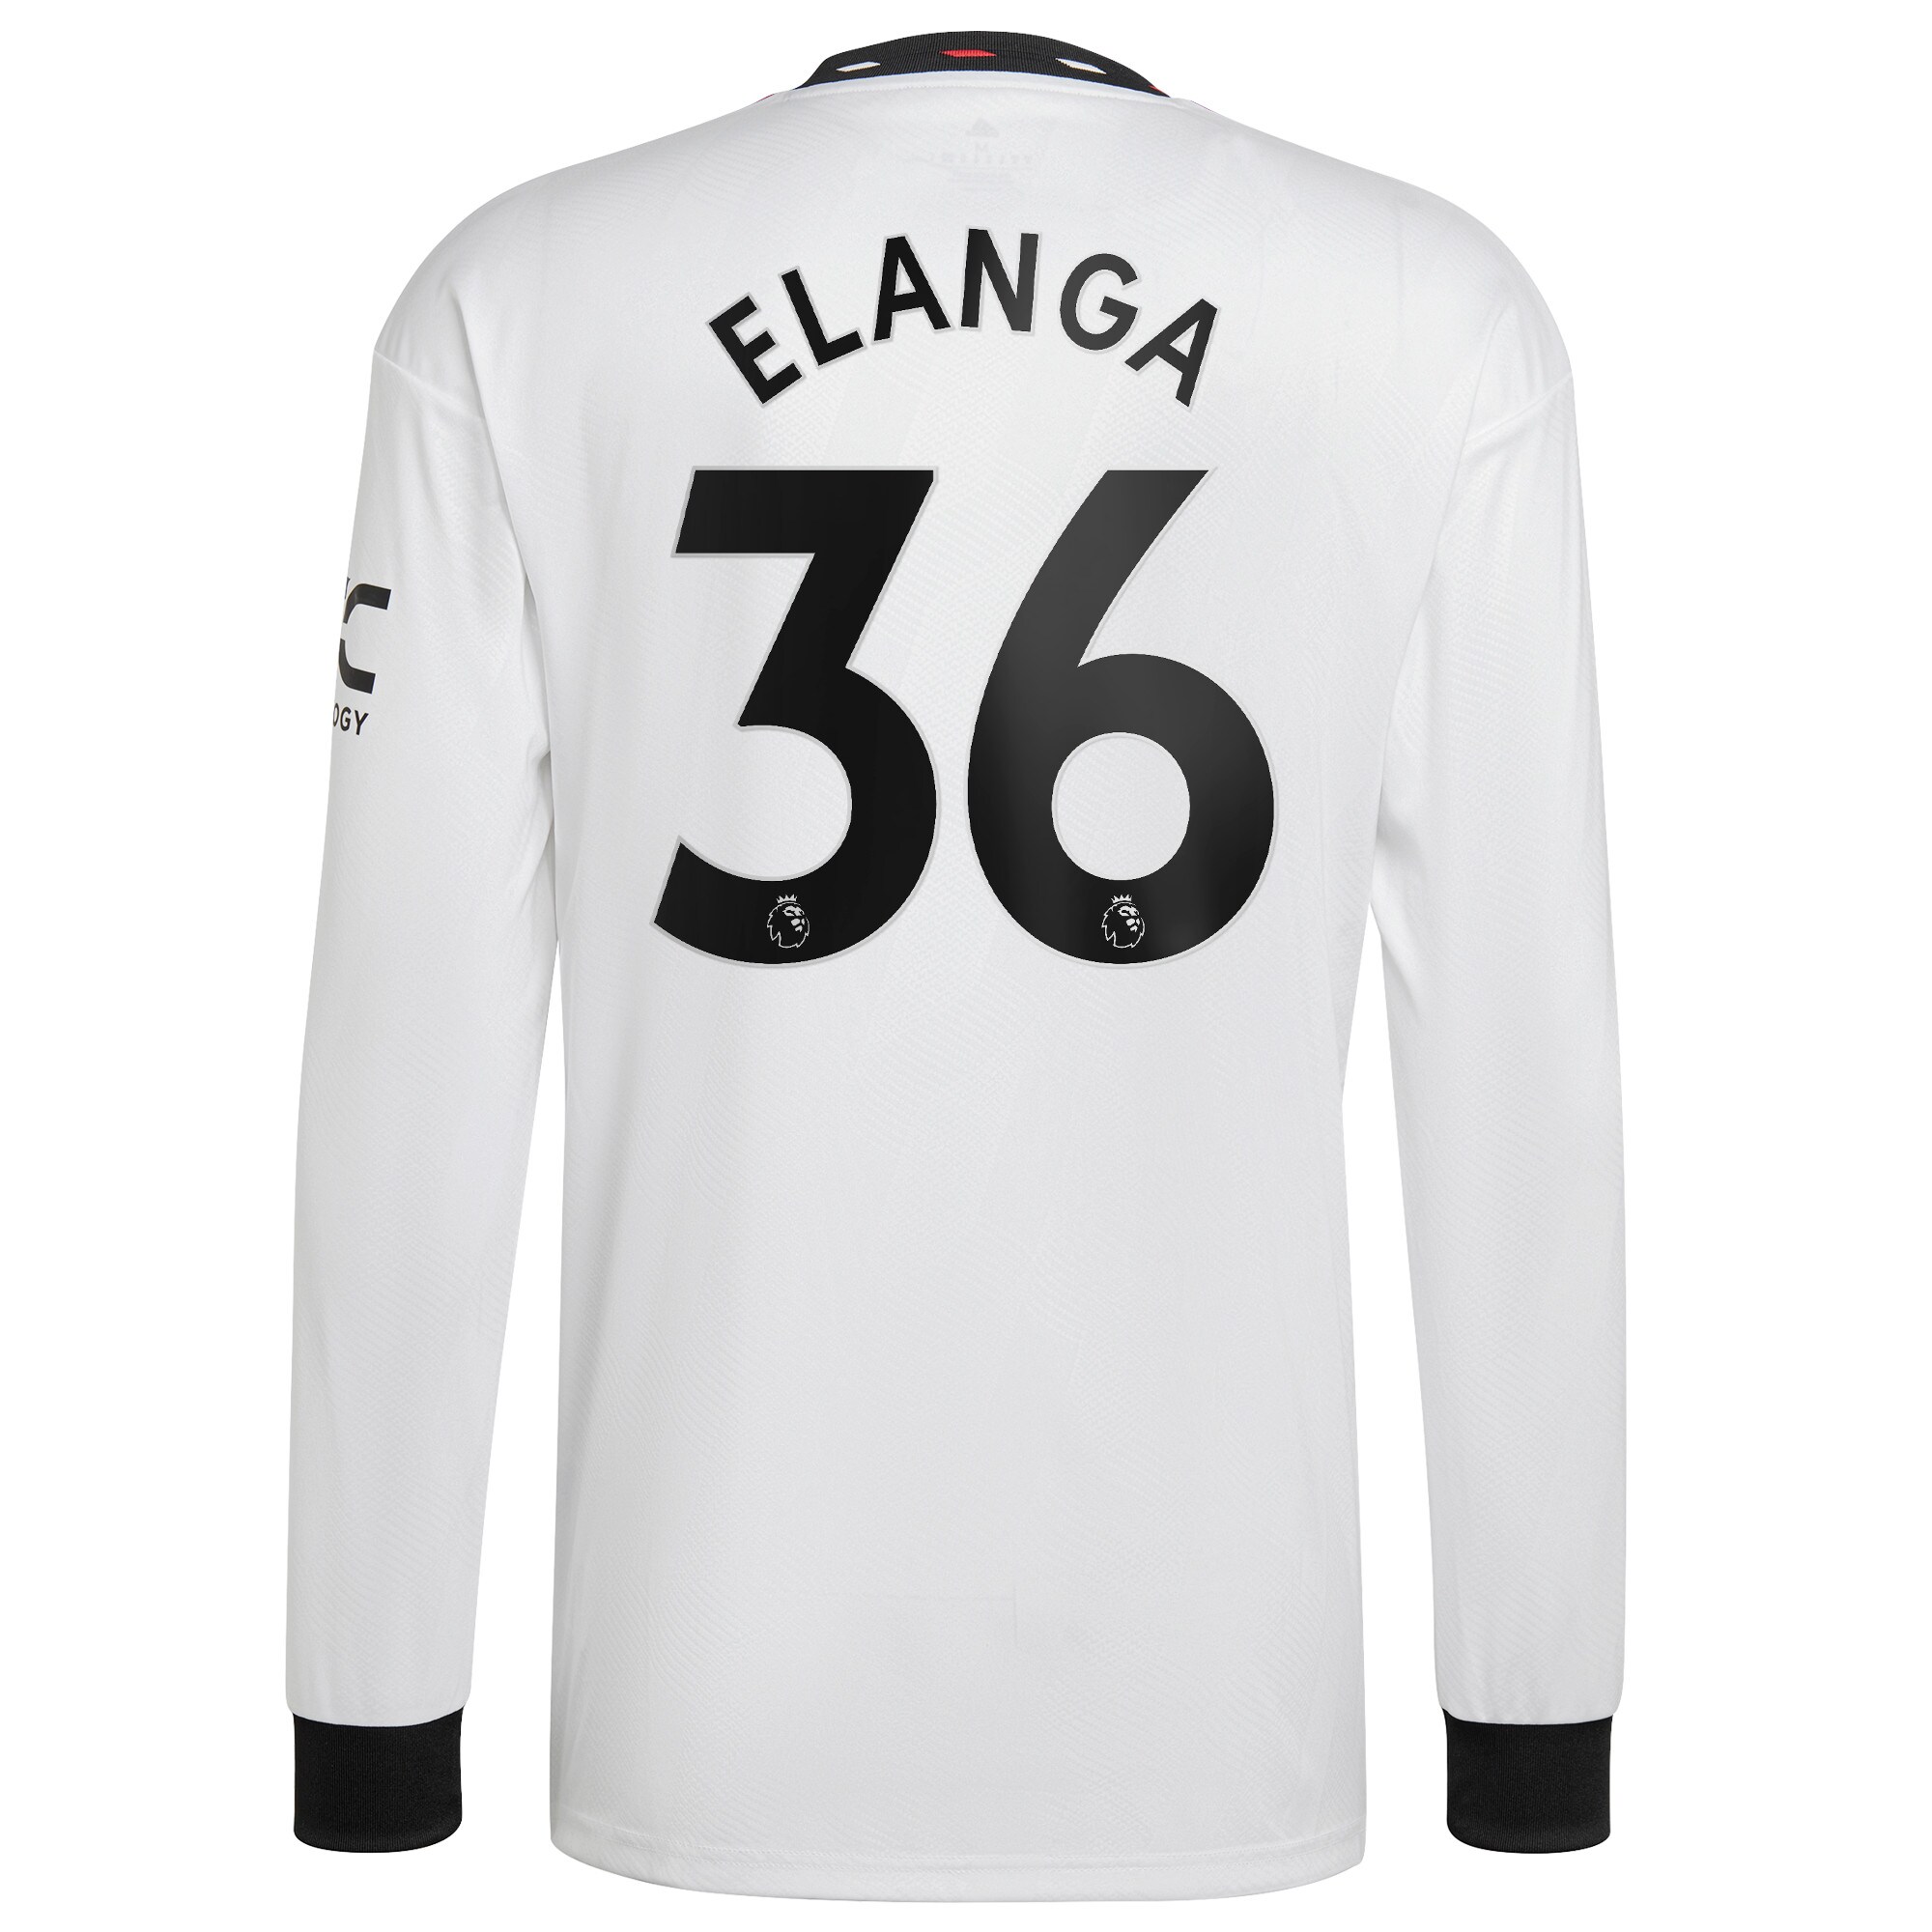 Men Manchester United Away Shirts Anthony Elanga Shirt 2022-23 Long Sleeve Elanga 36 Printing